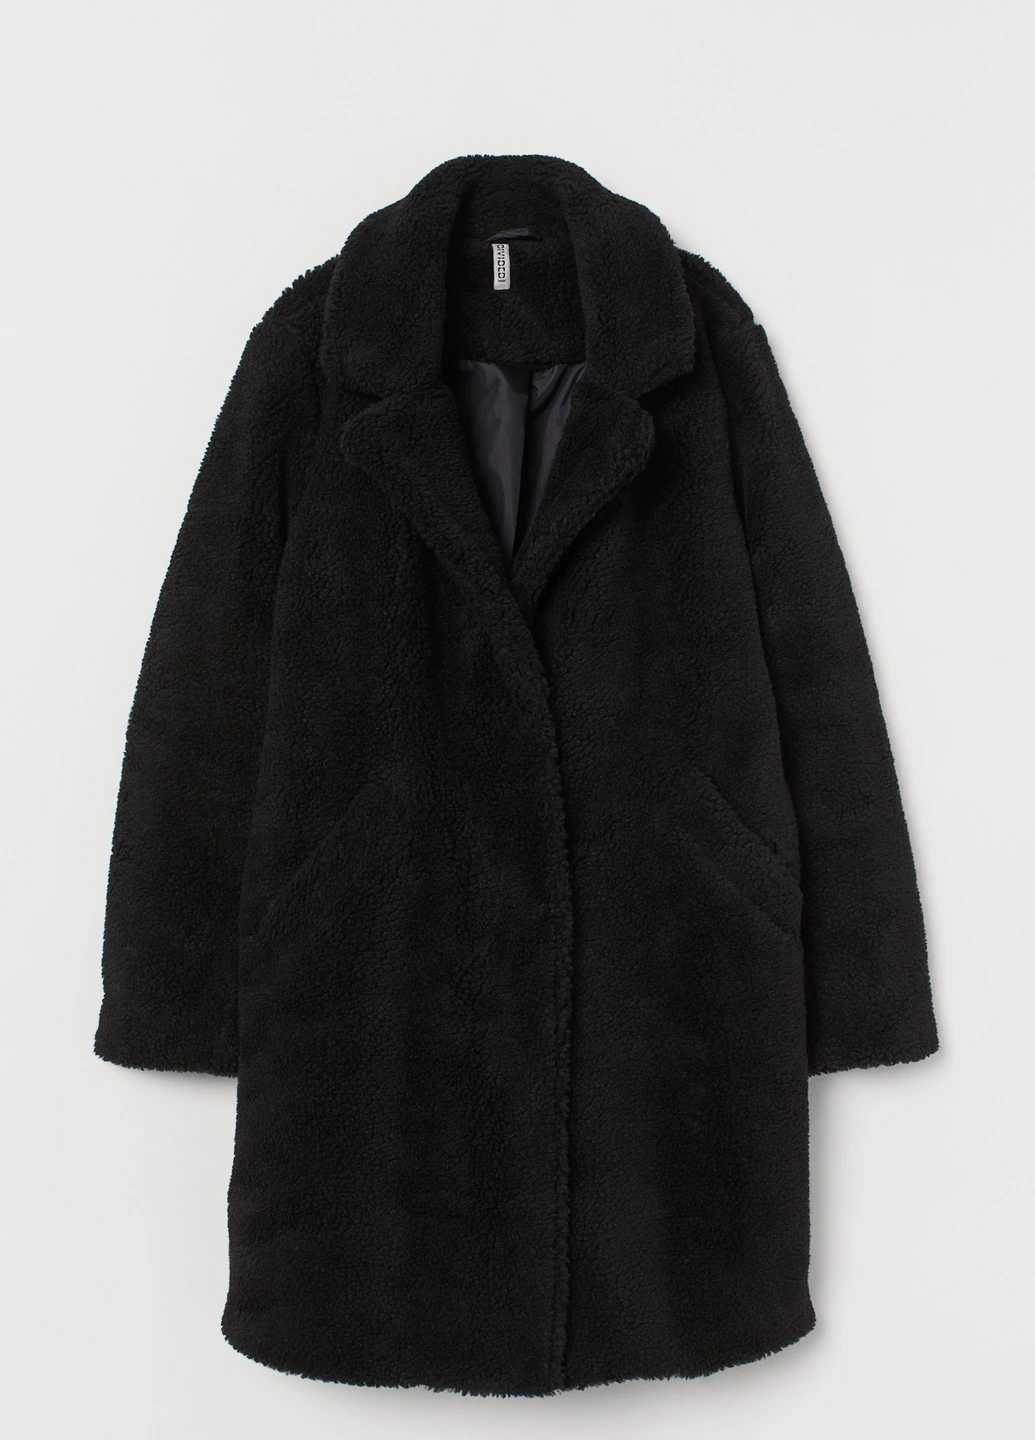 Шуба/Пальто Teddy Bear H&M. Розмір xs